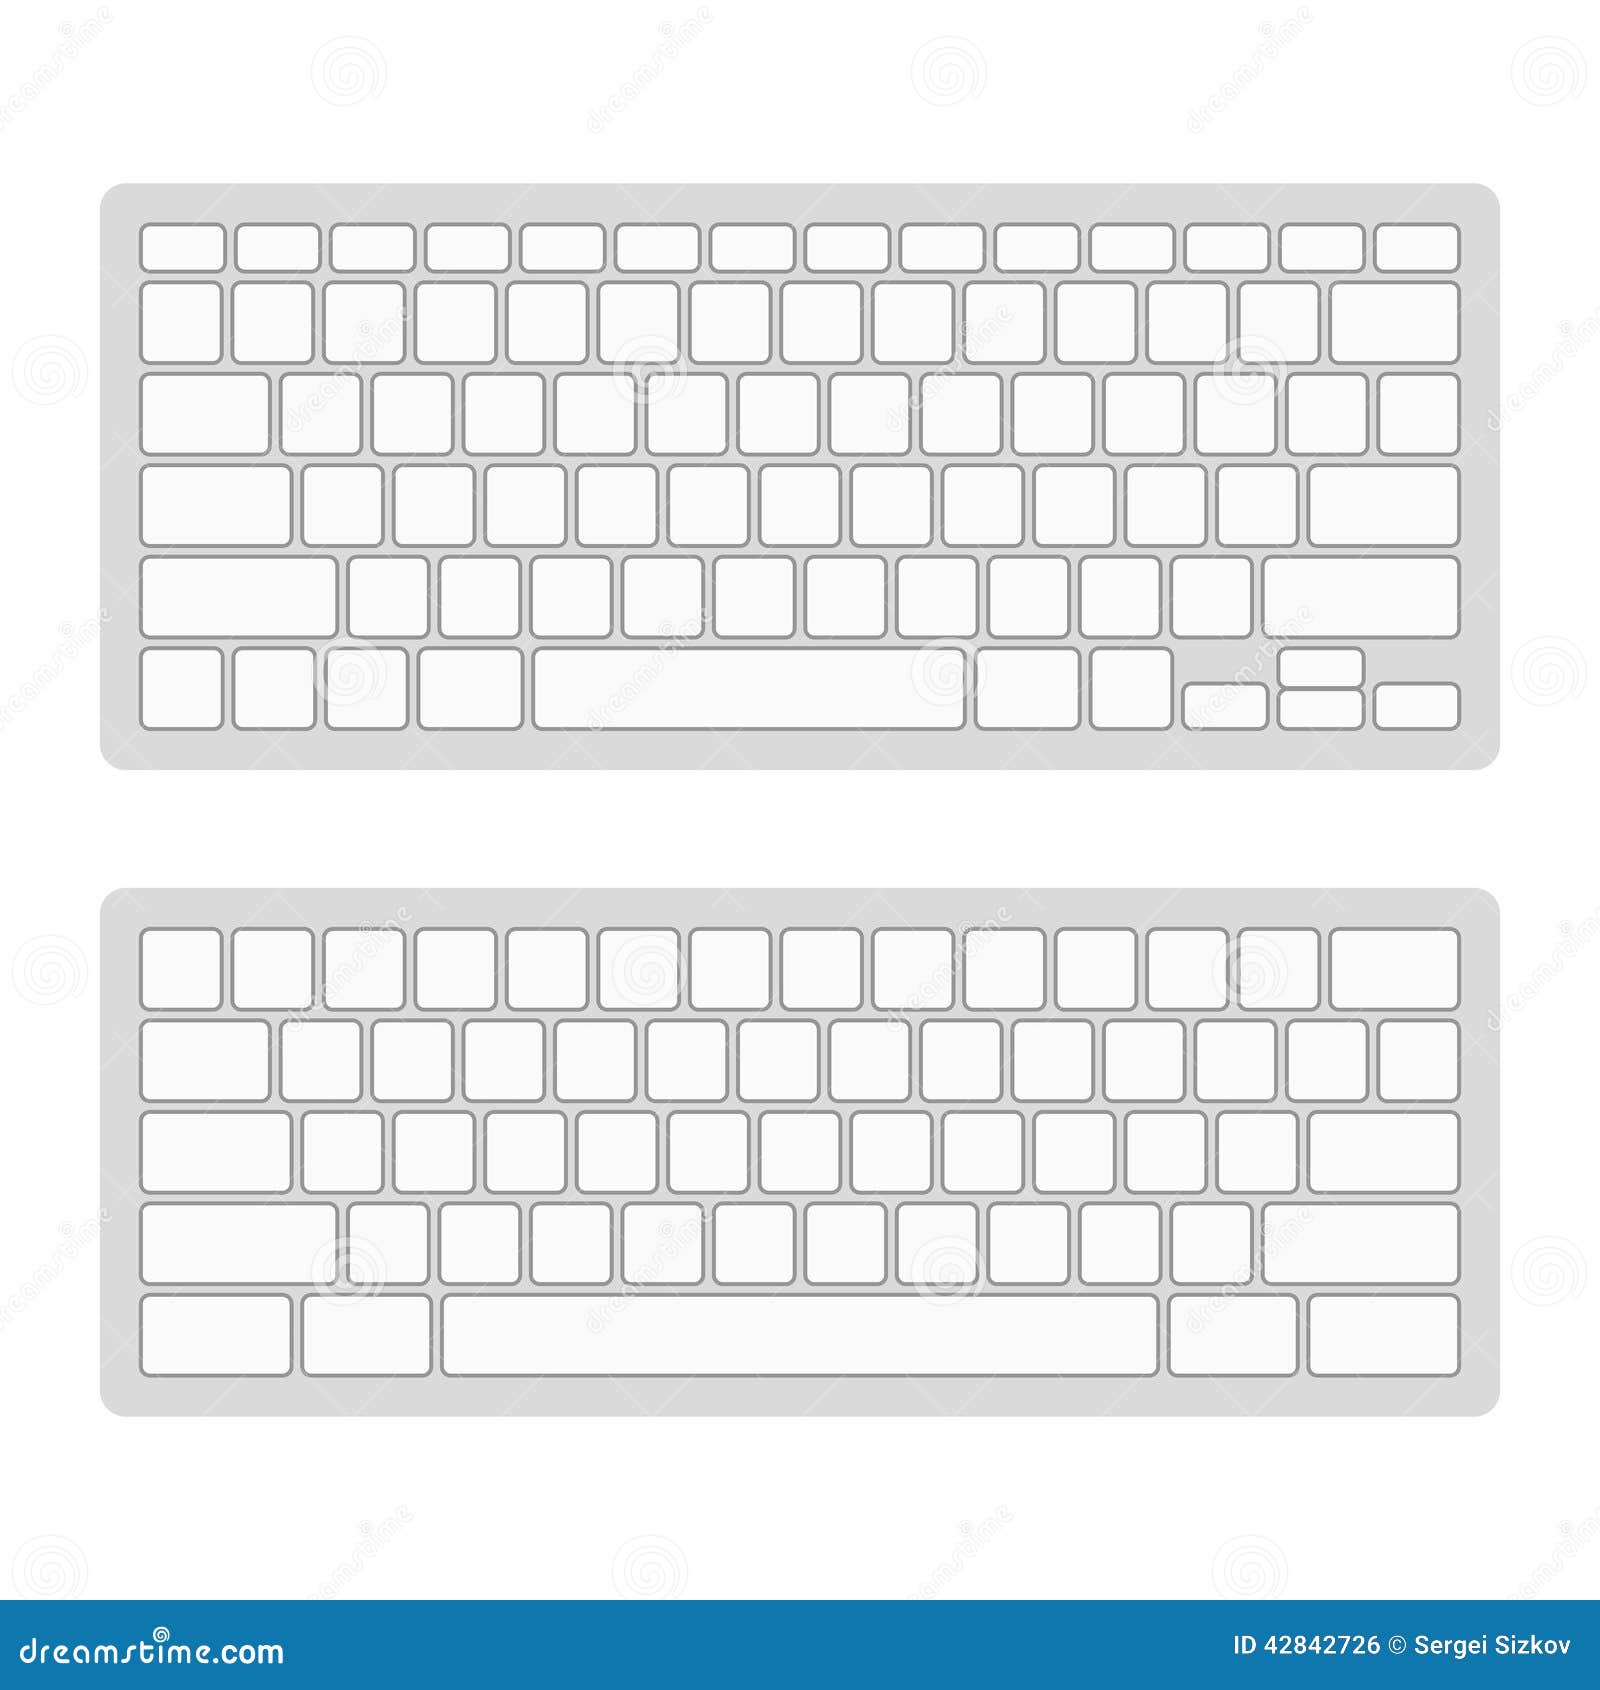 Maqueta de teclado. teclado para portátil. ilustración vectorial